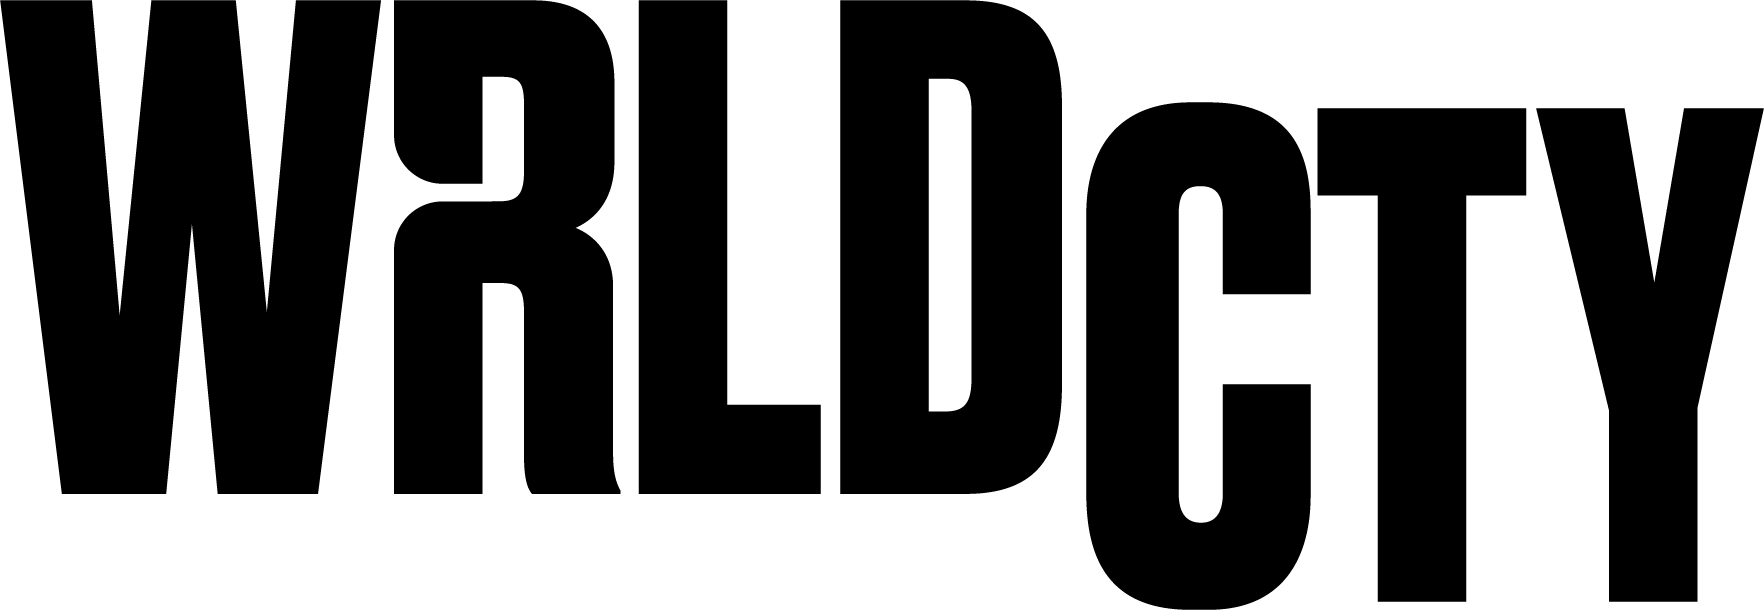 WRLDCTY Logo.png